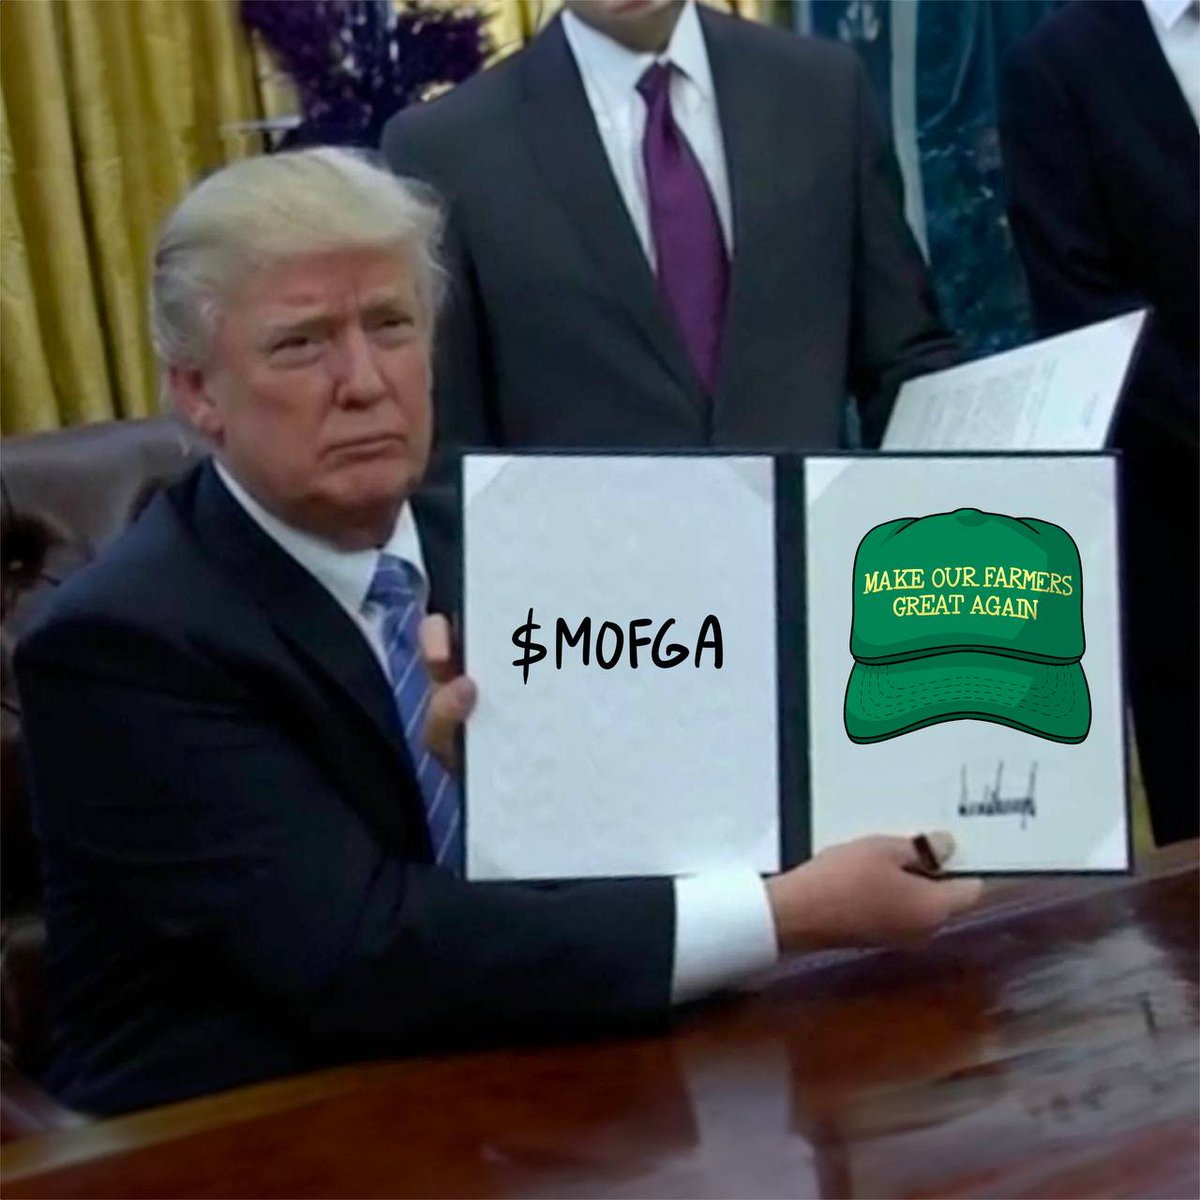 the ticker is $MOFGA!